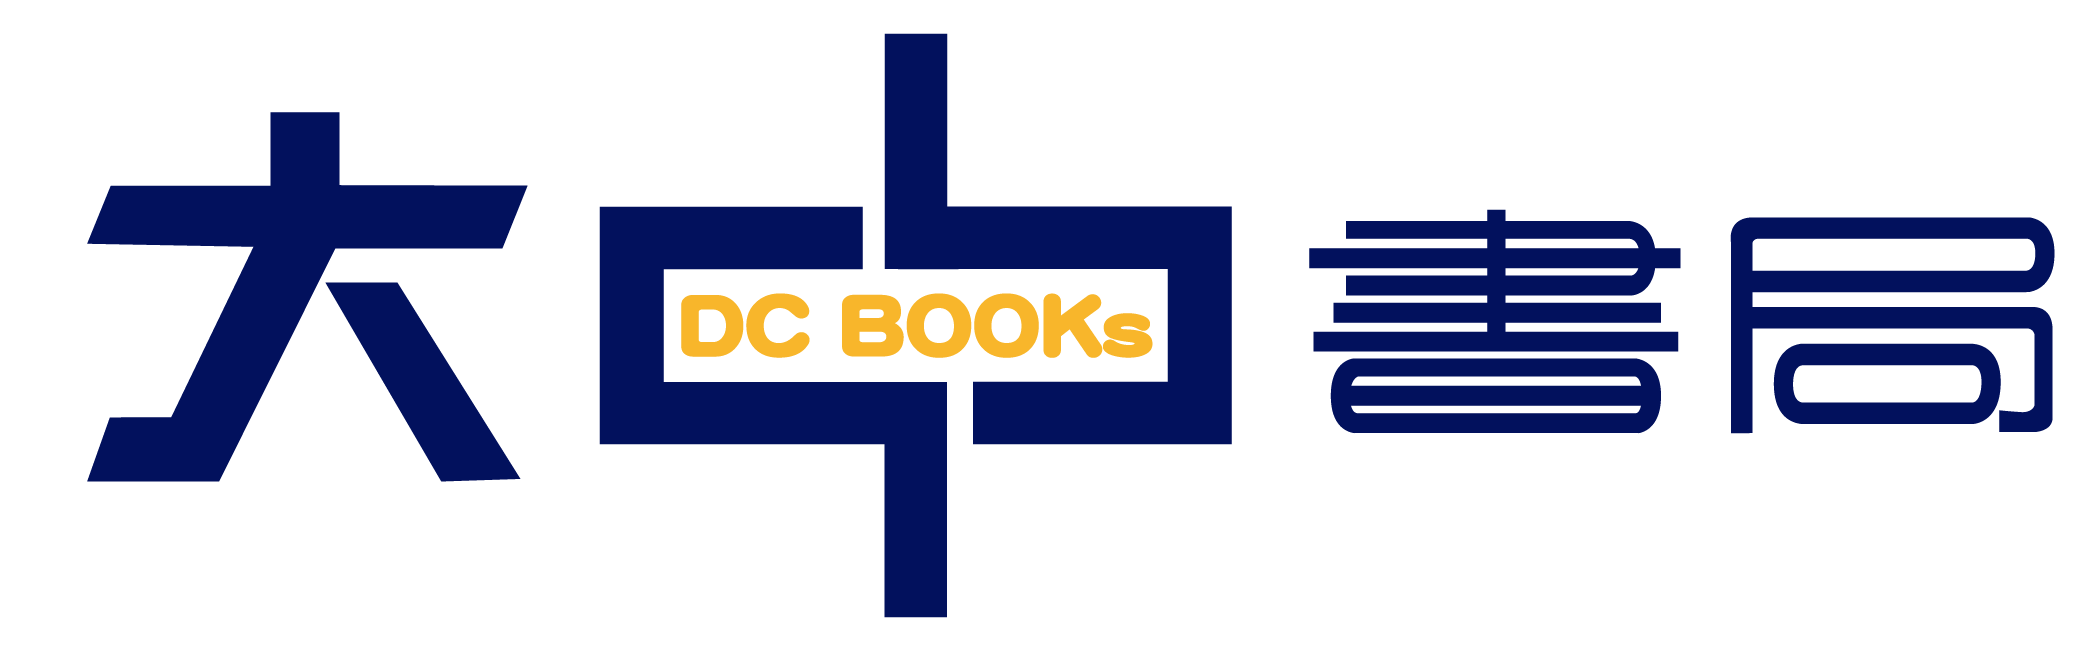 大中書局 DC BOOKs